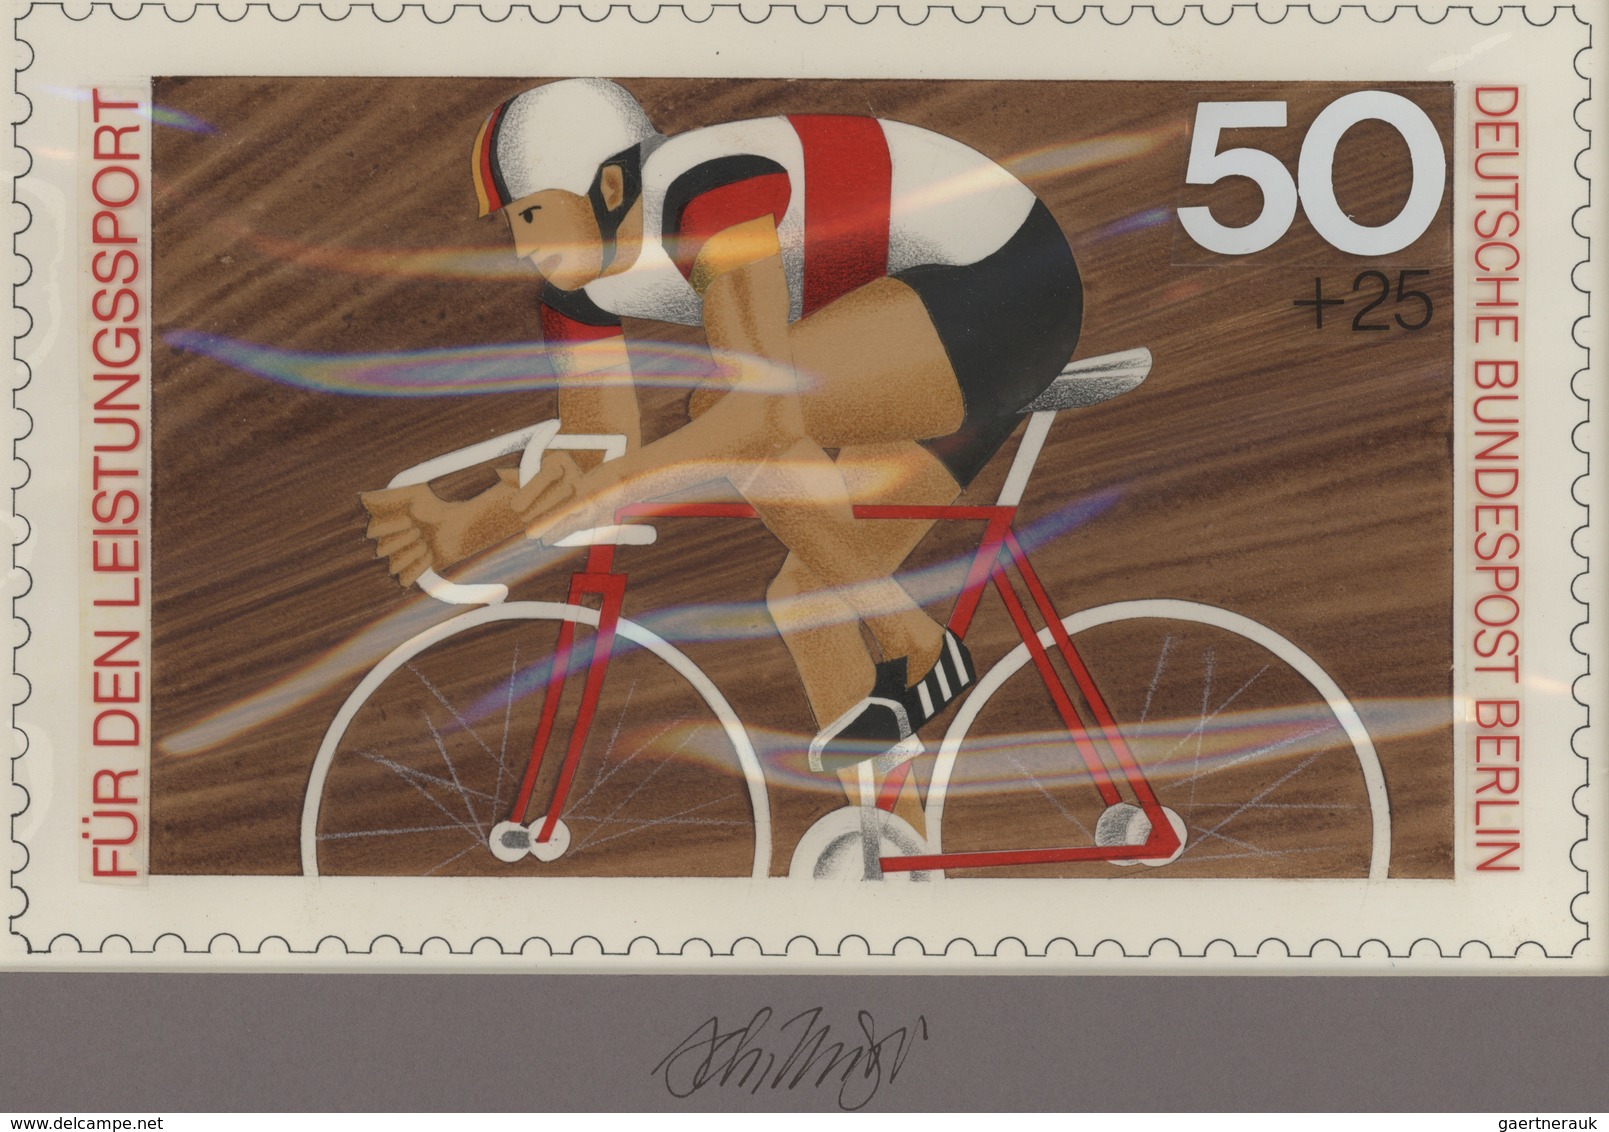 Thematik: Sport-Radsport / Sport-cycling: 1978, Berlin, Nicht Angenommener Künstlerentwurf (26,5x16, - Wielrennen